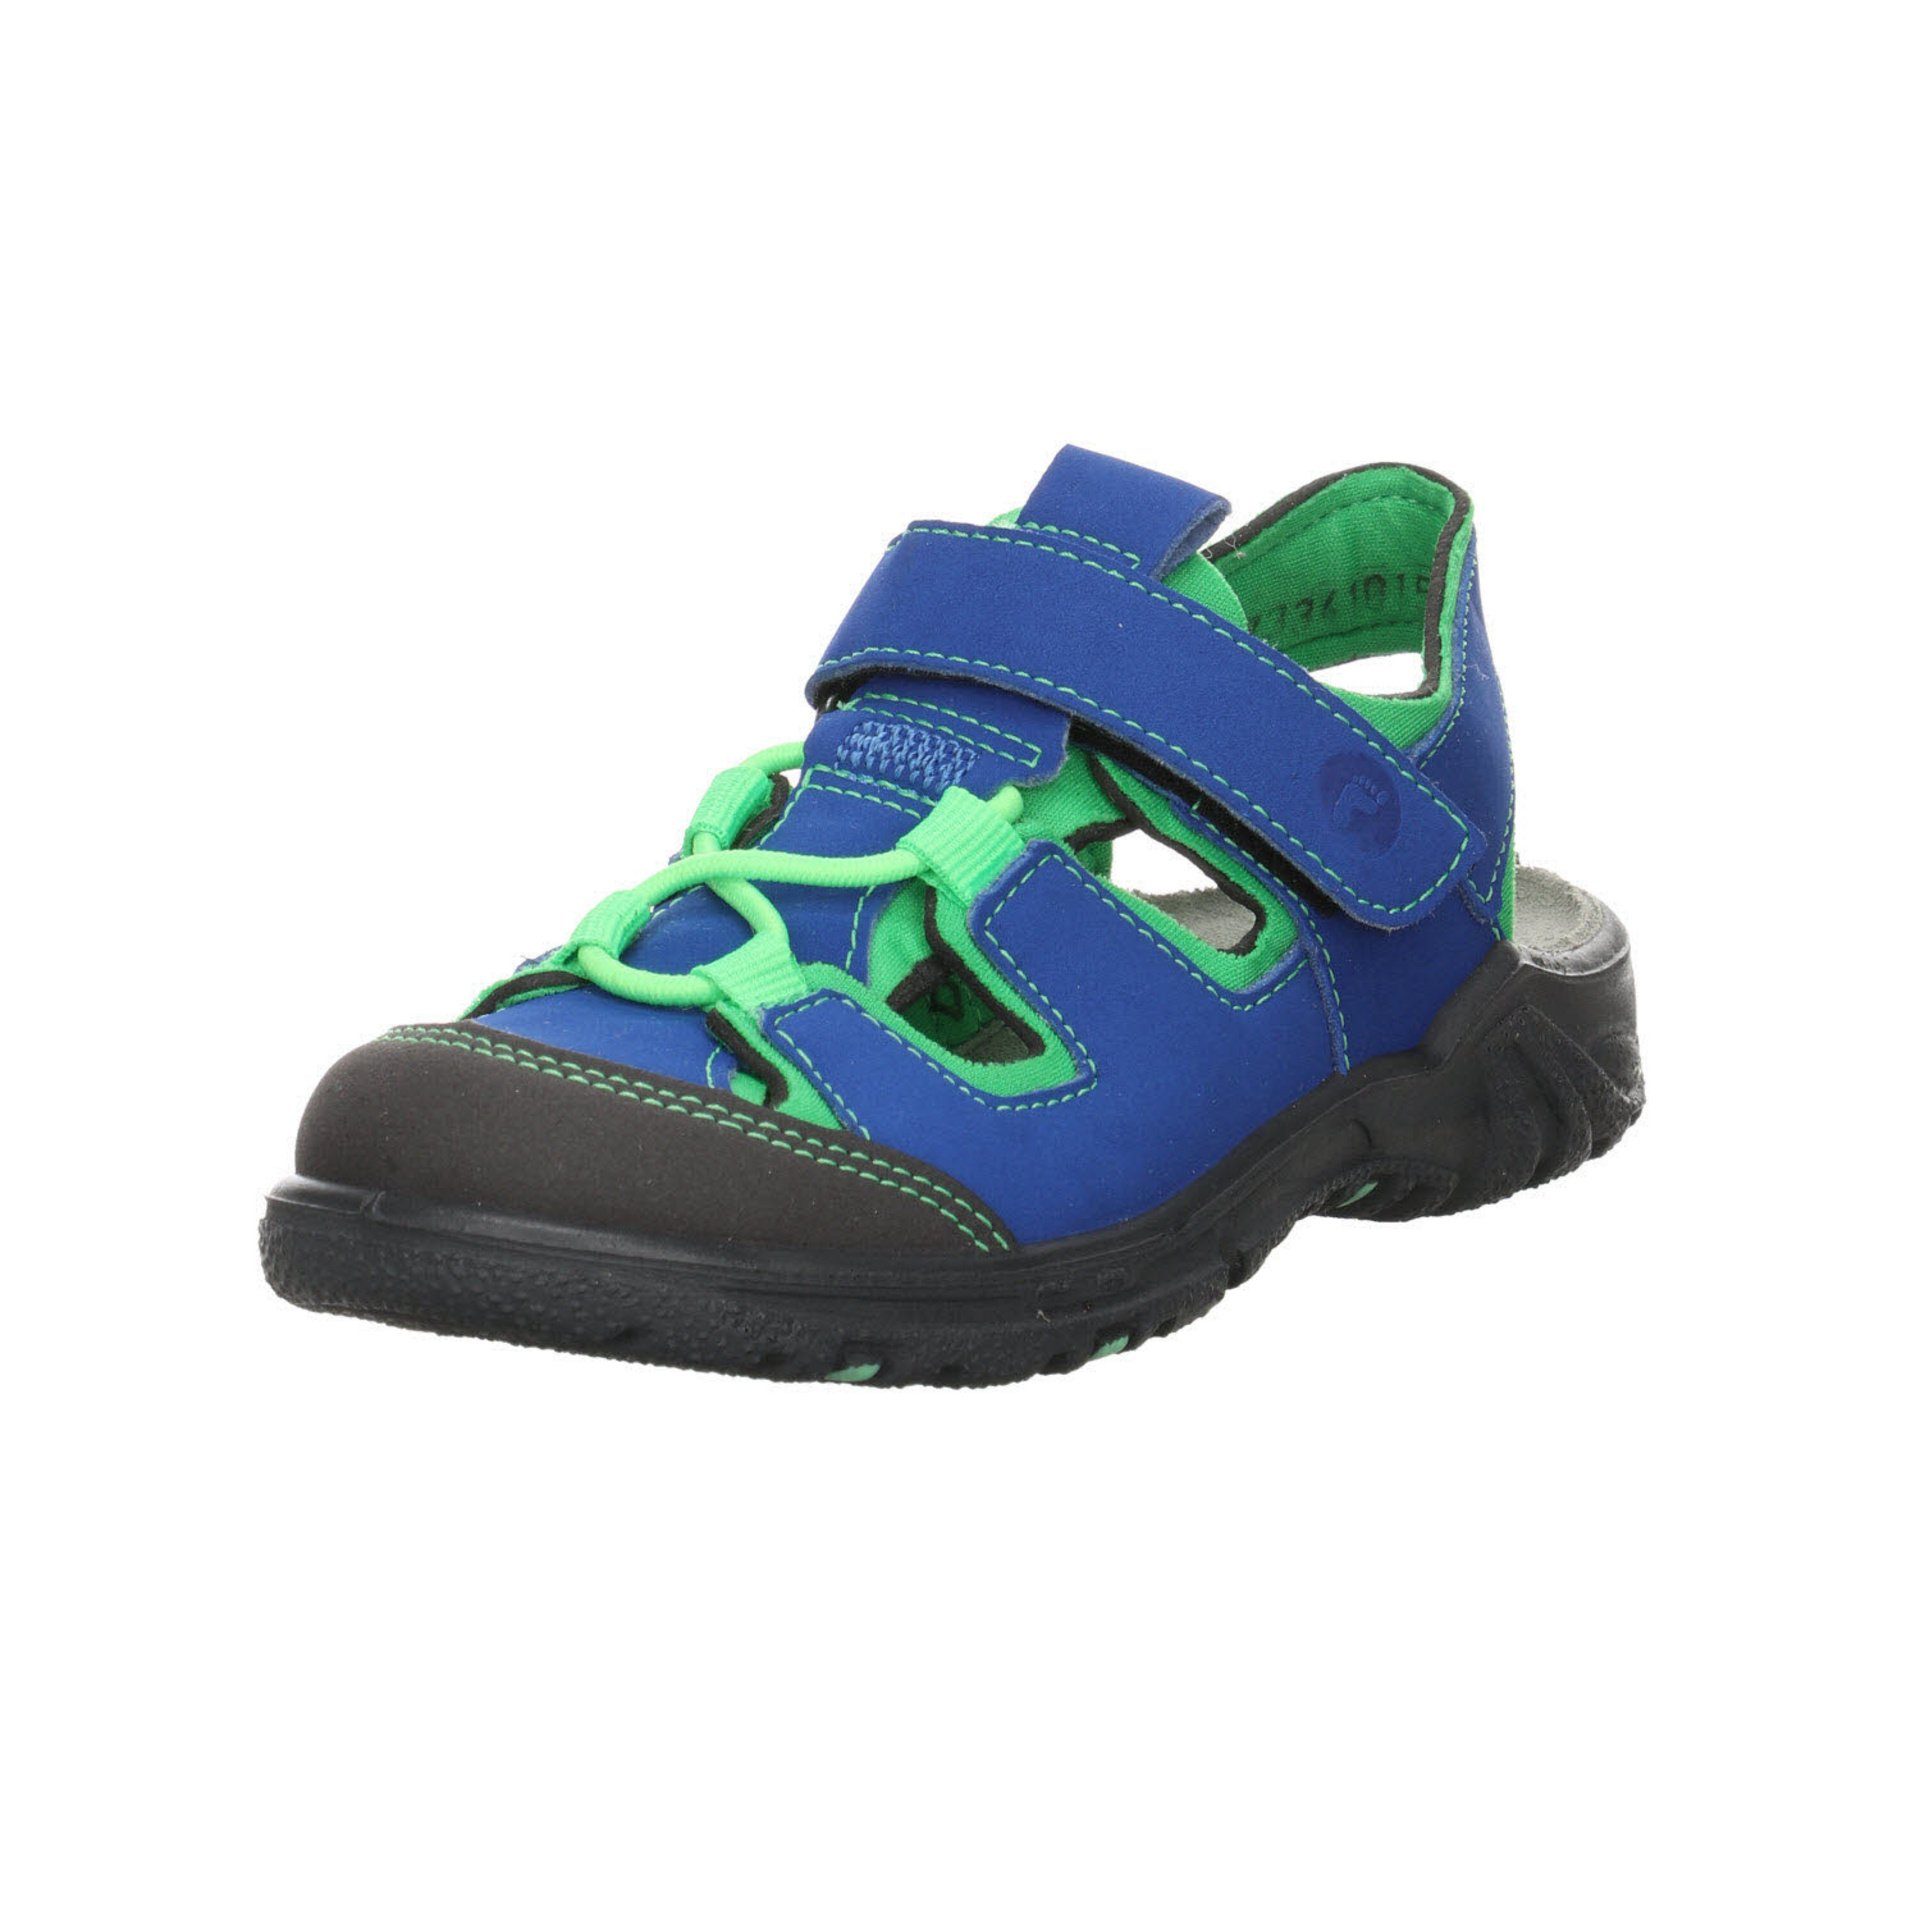 Ricosta Jungen Sandalen Schuhe Gerald Outdoorsandale Sandale Synthetikkombination blau sonstige Kombin